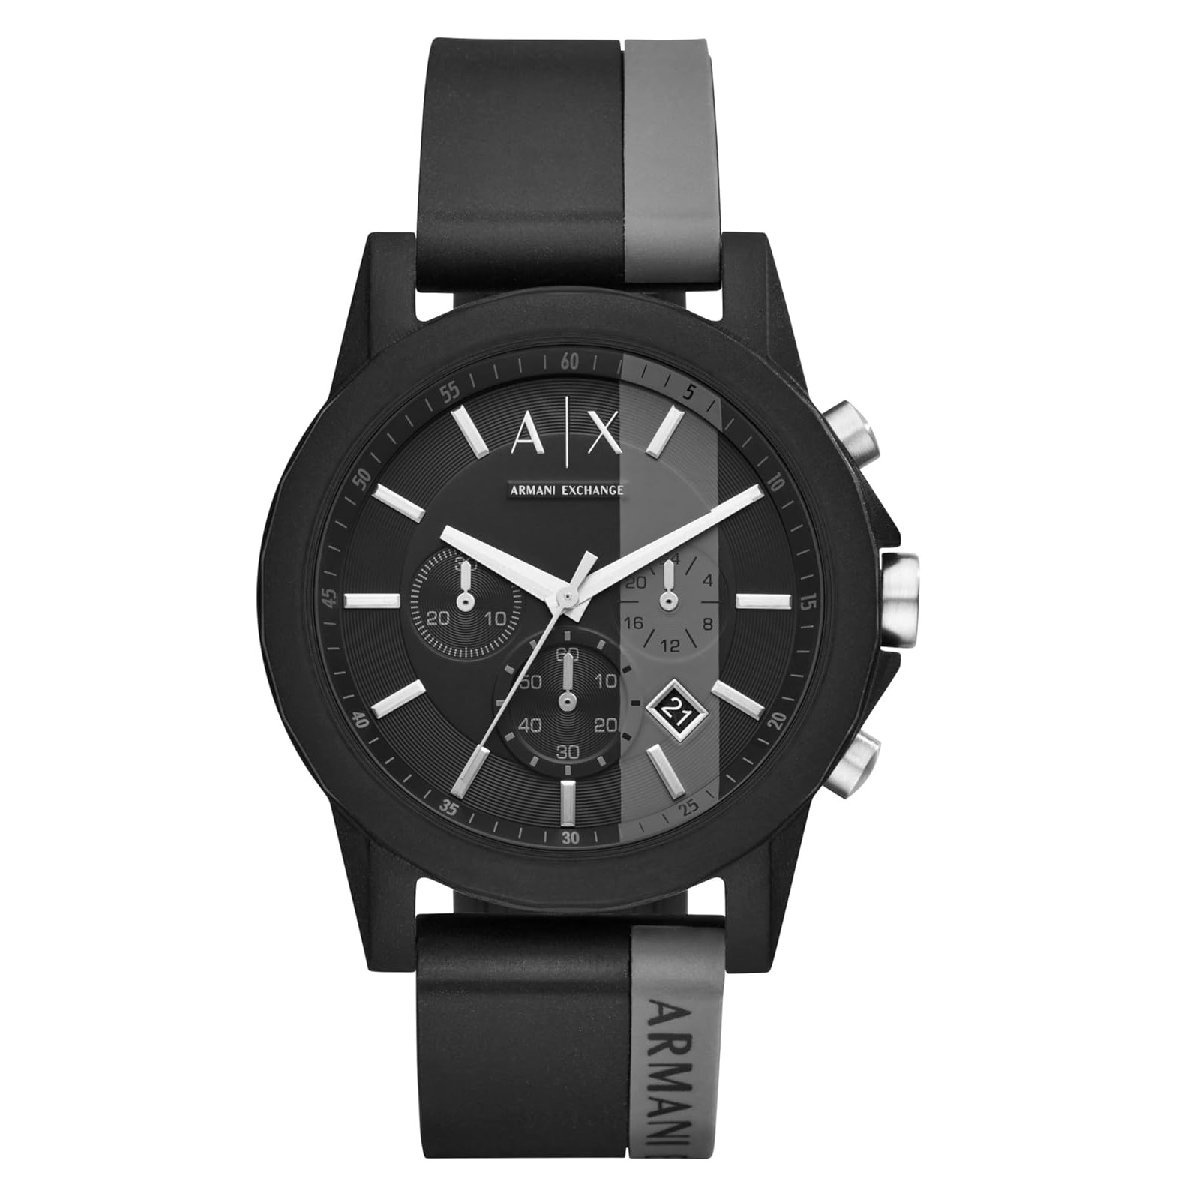 2年保証 新品 ARMANI EXCHANGE アルマーニエクスチェンジ 腕時計 AX1331 OUTERBANKS メンズ 男性_画像2